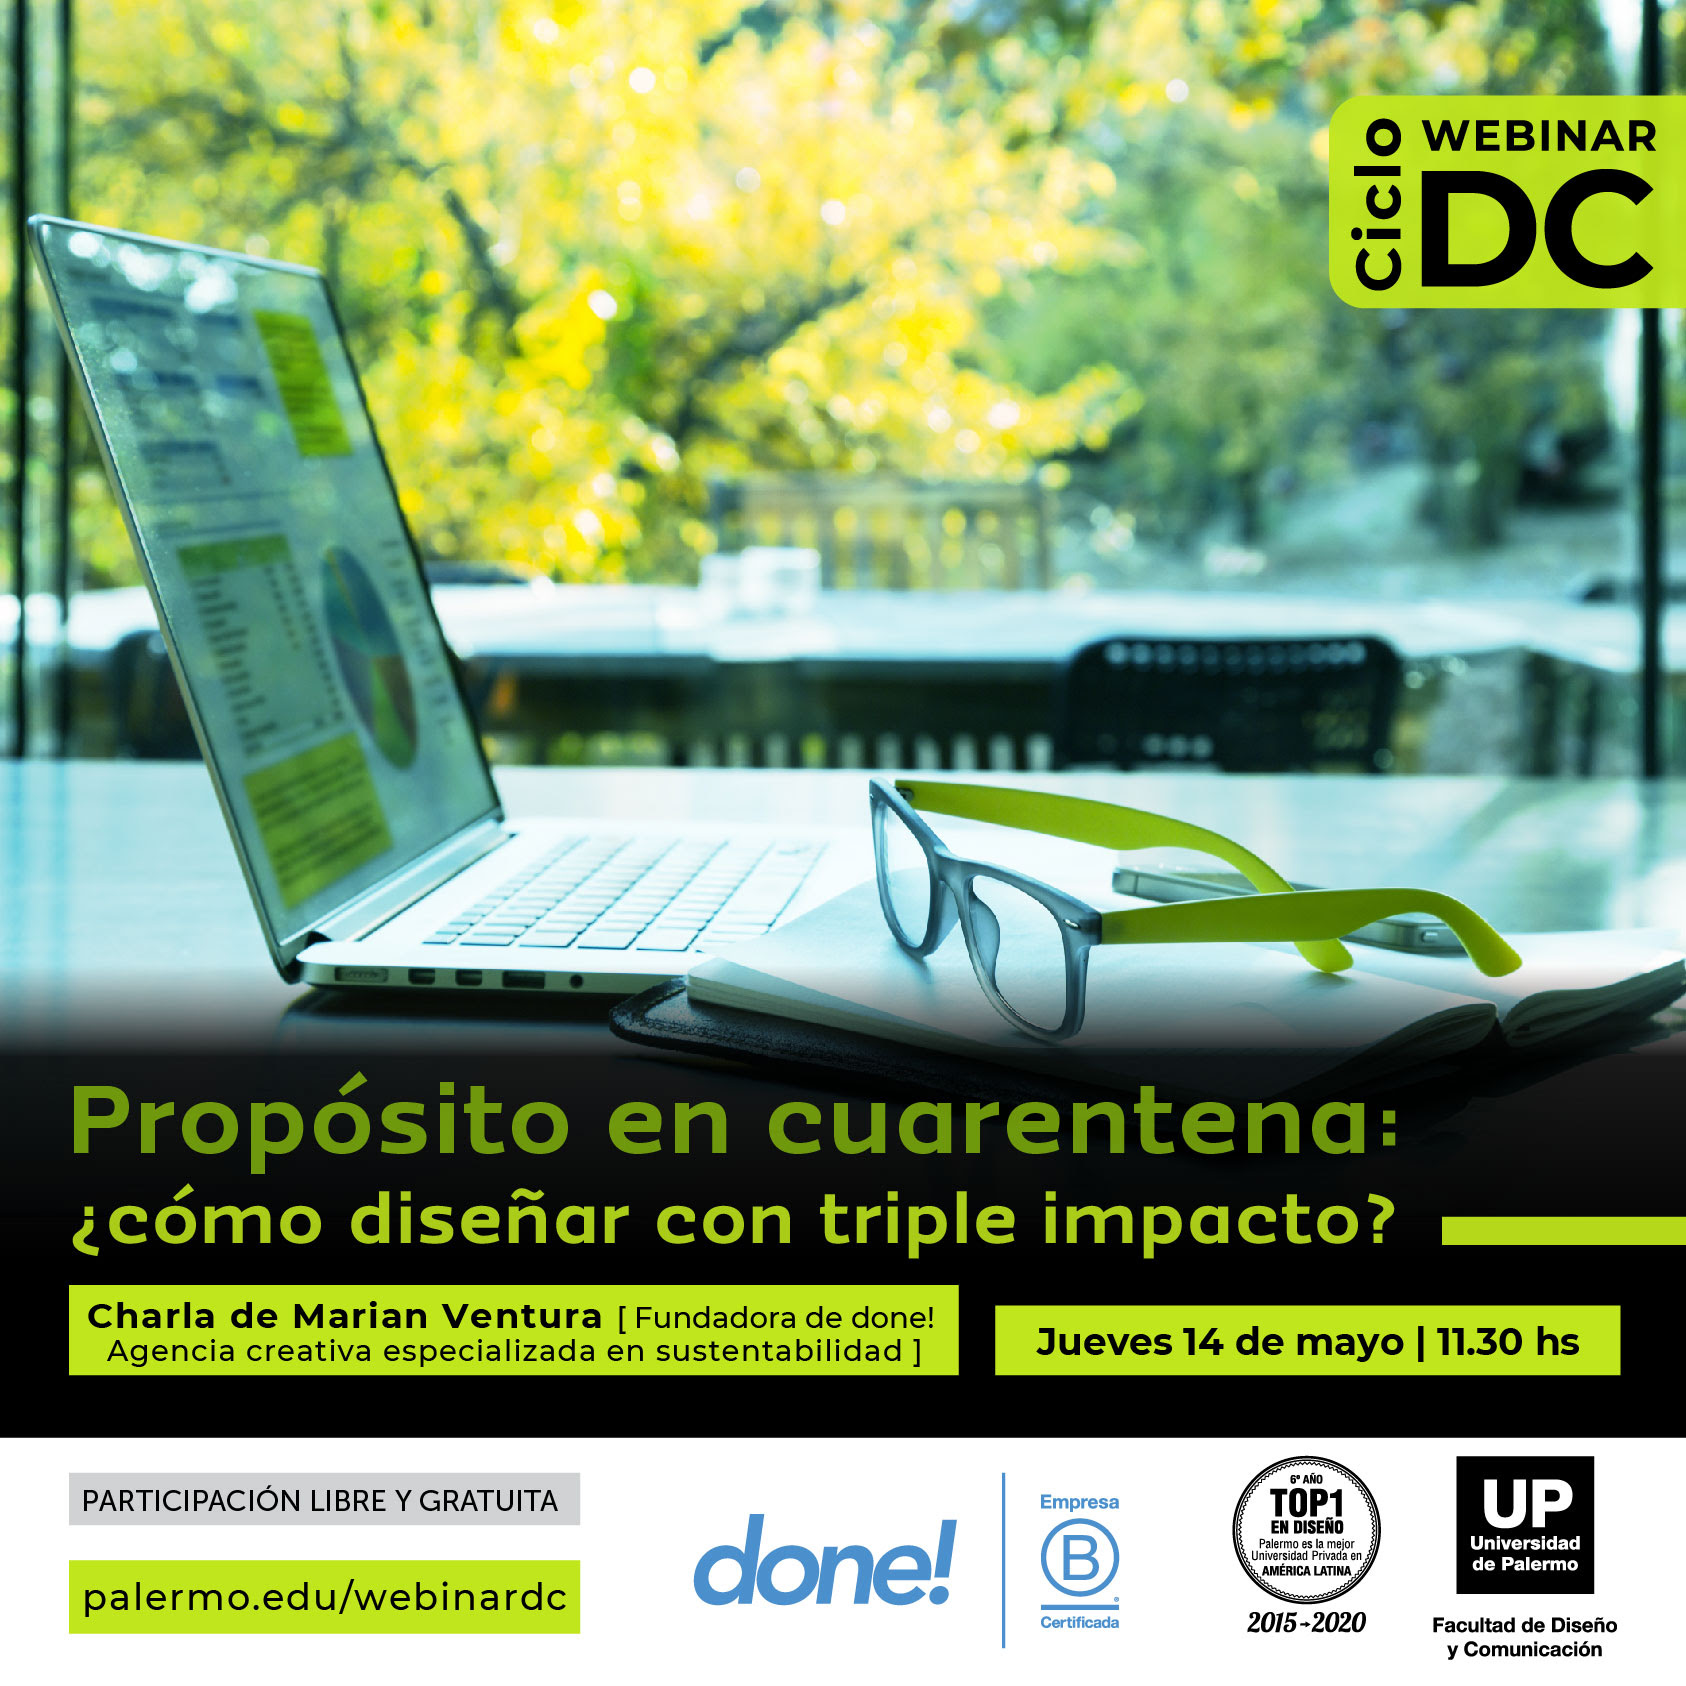 Webinar "Propósito en Cuarentena" organizado por la UP